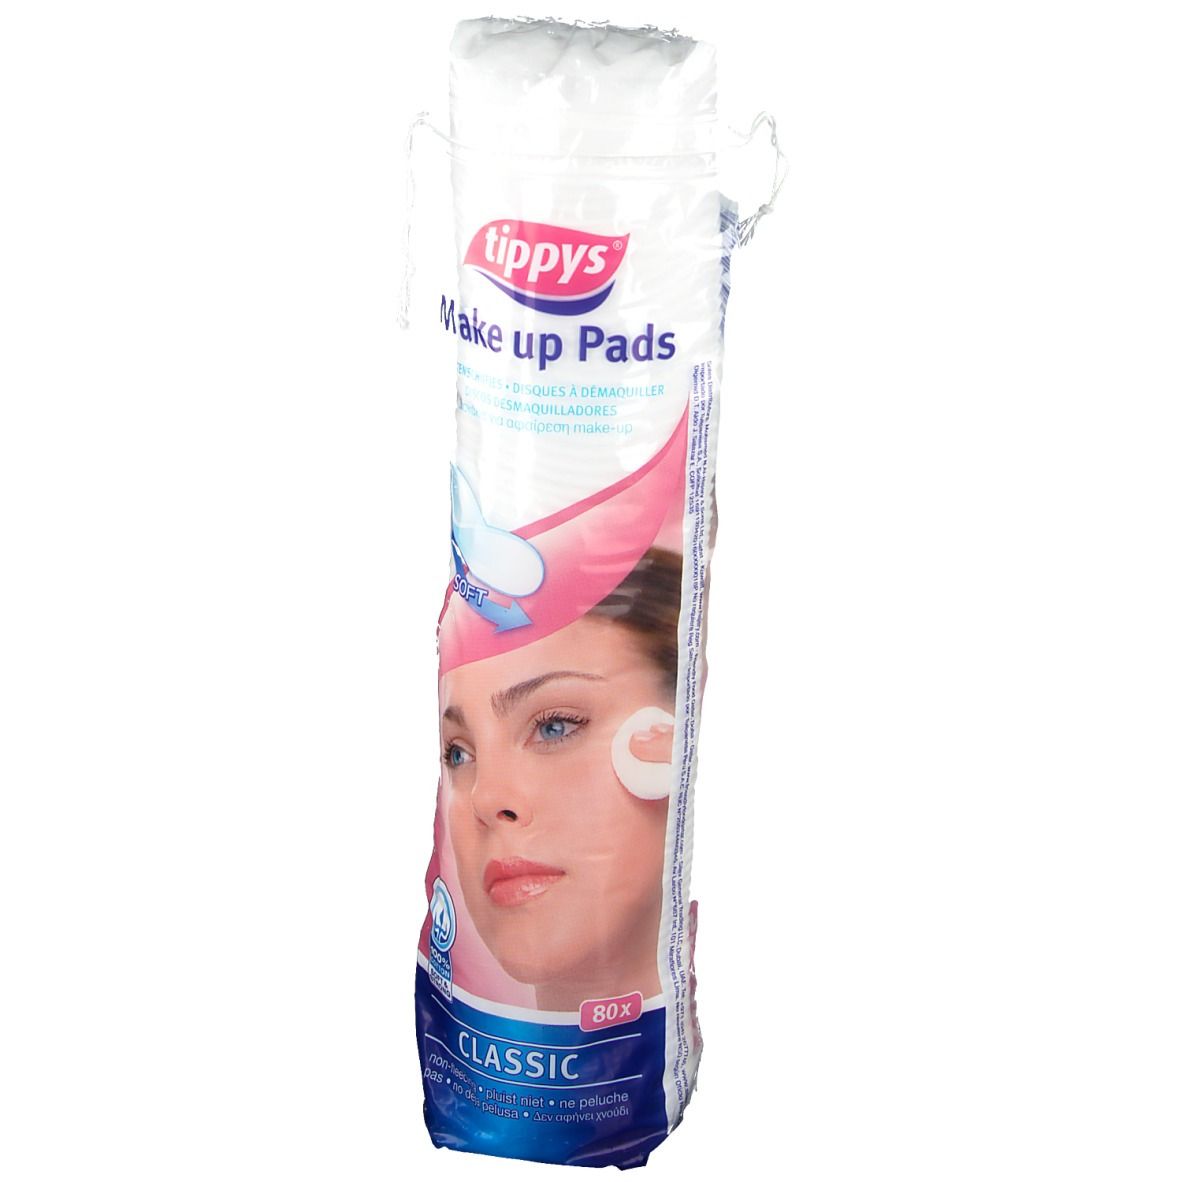 Tippys Make-up pads